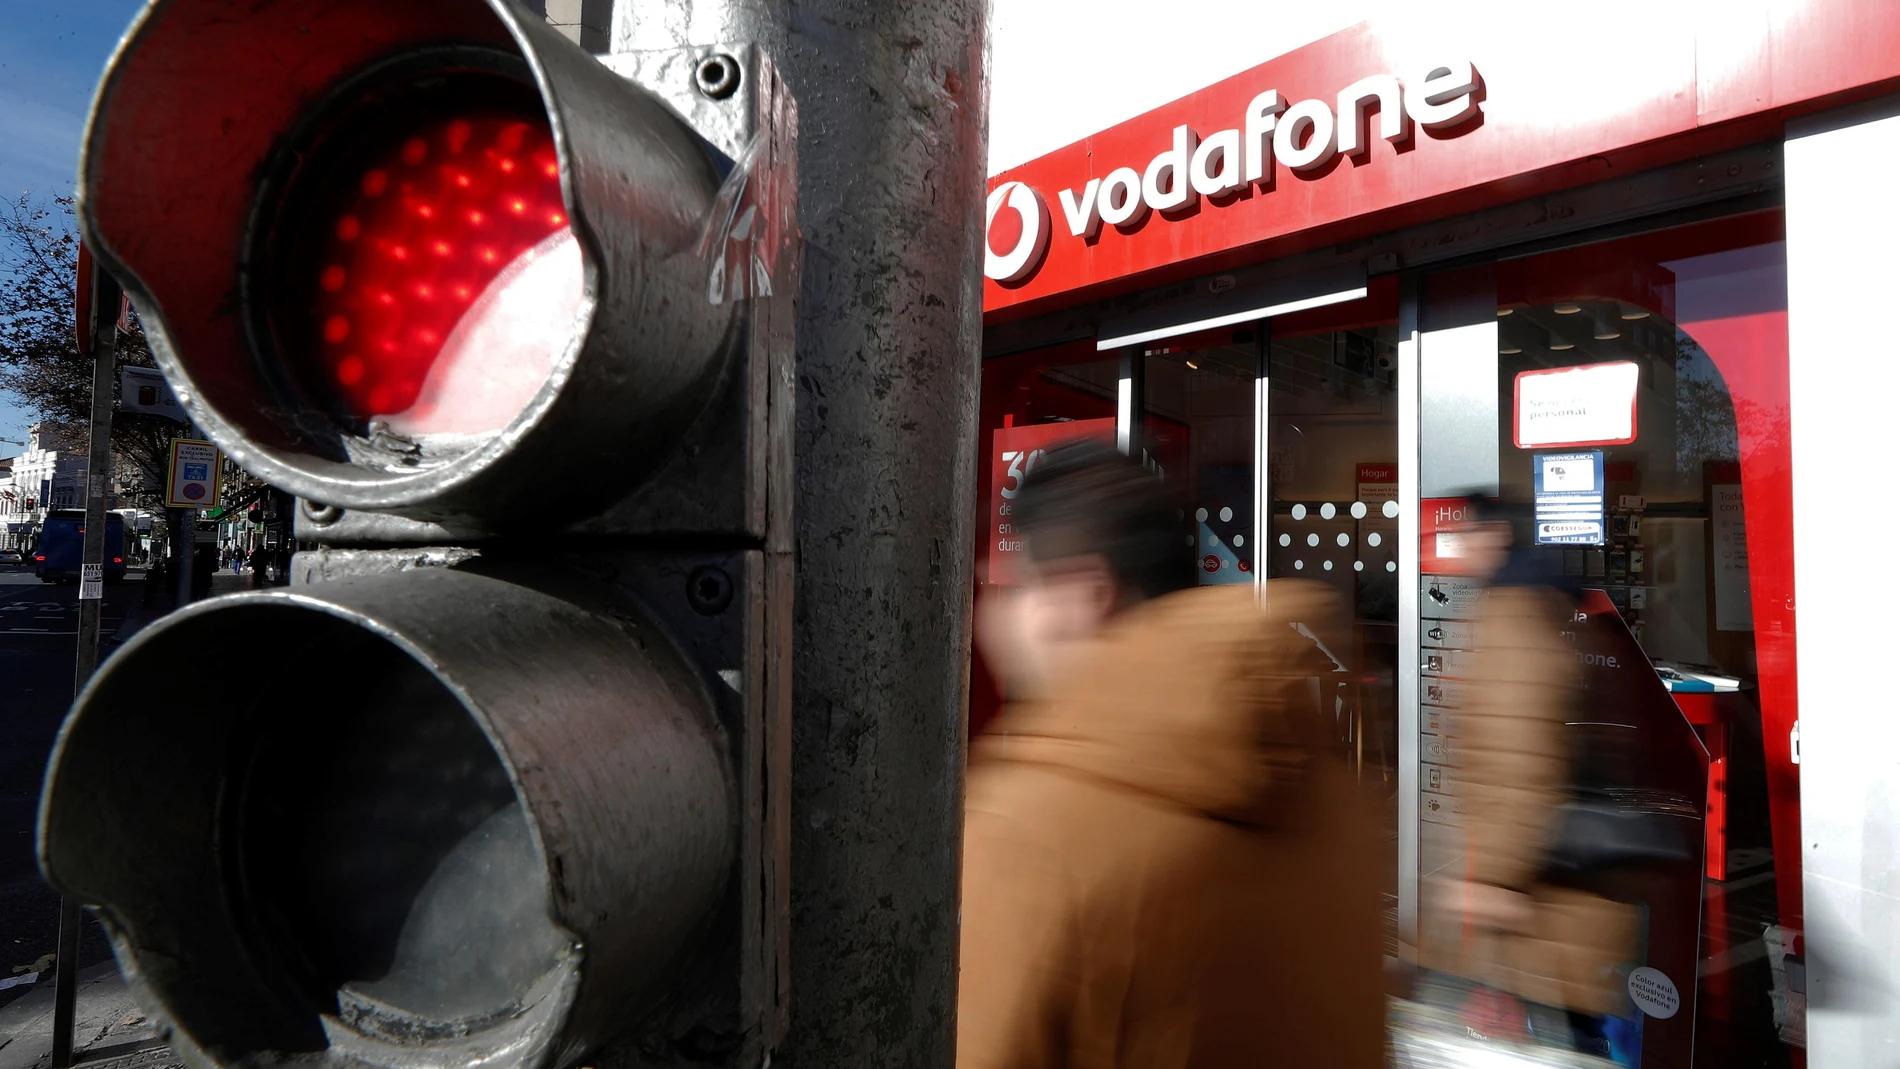 Vodafone podrá recurrir en apelación la sentencia que le condena a indemnizar al hombre al que "avasalló" a llamadas